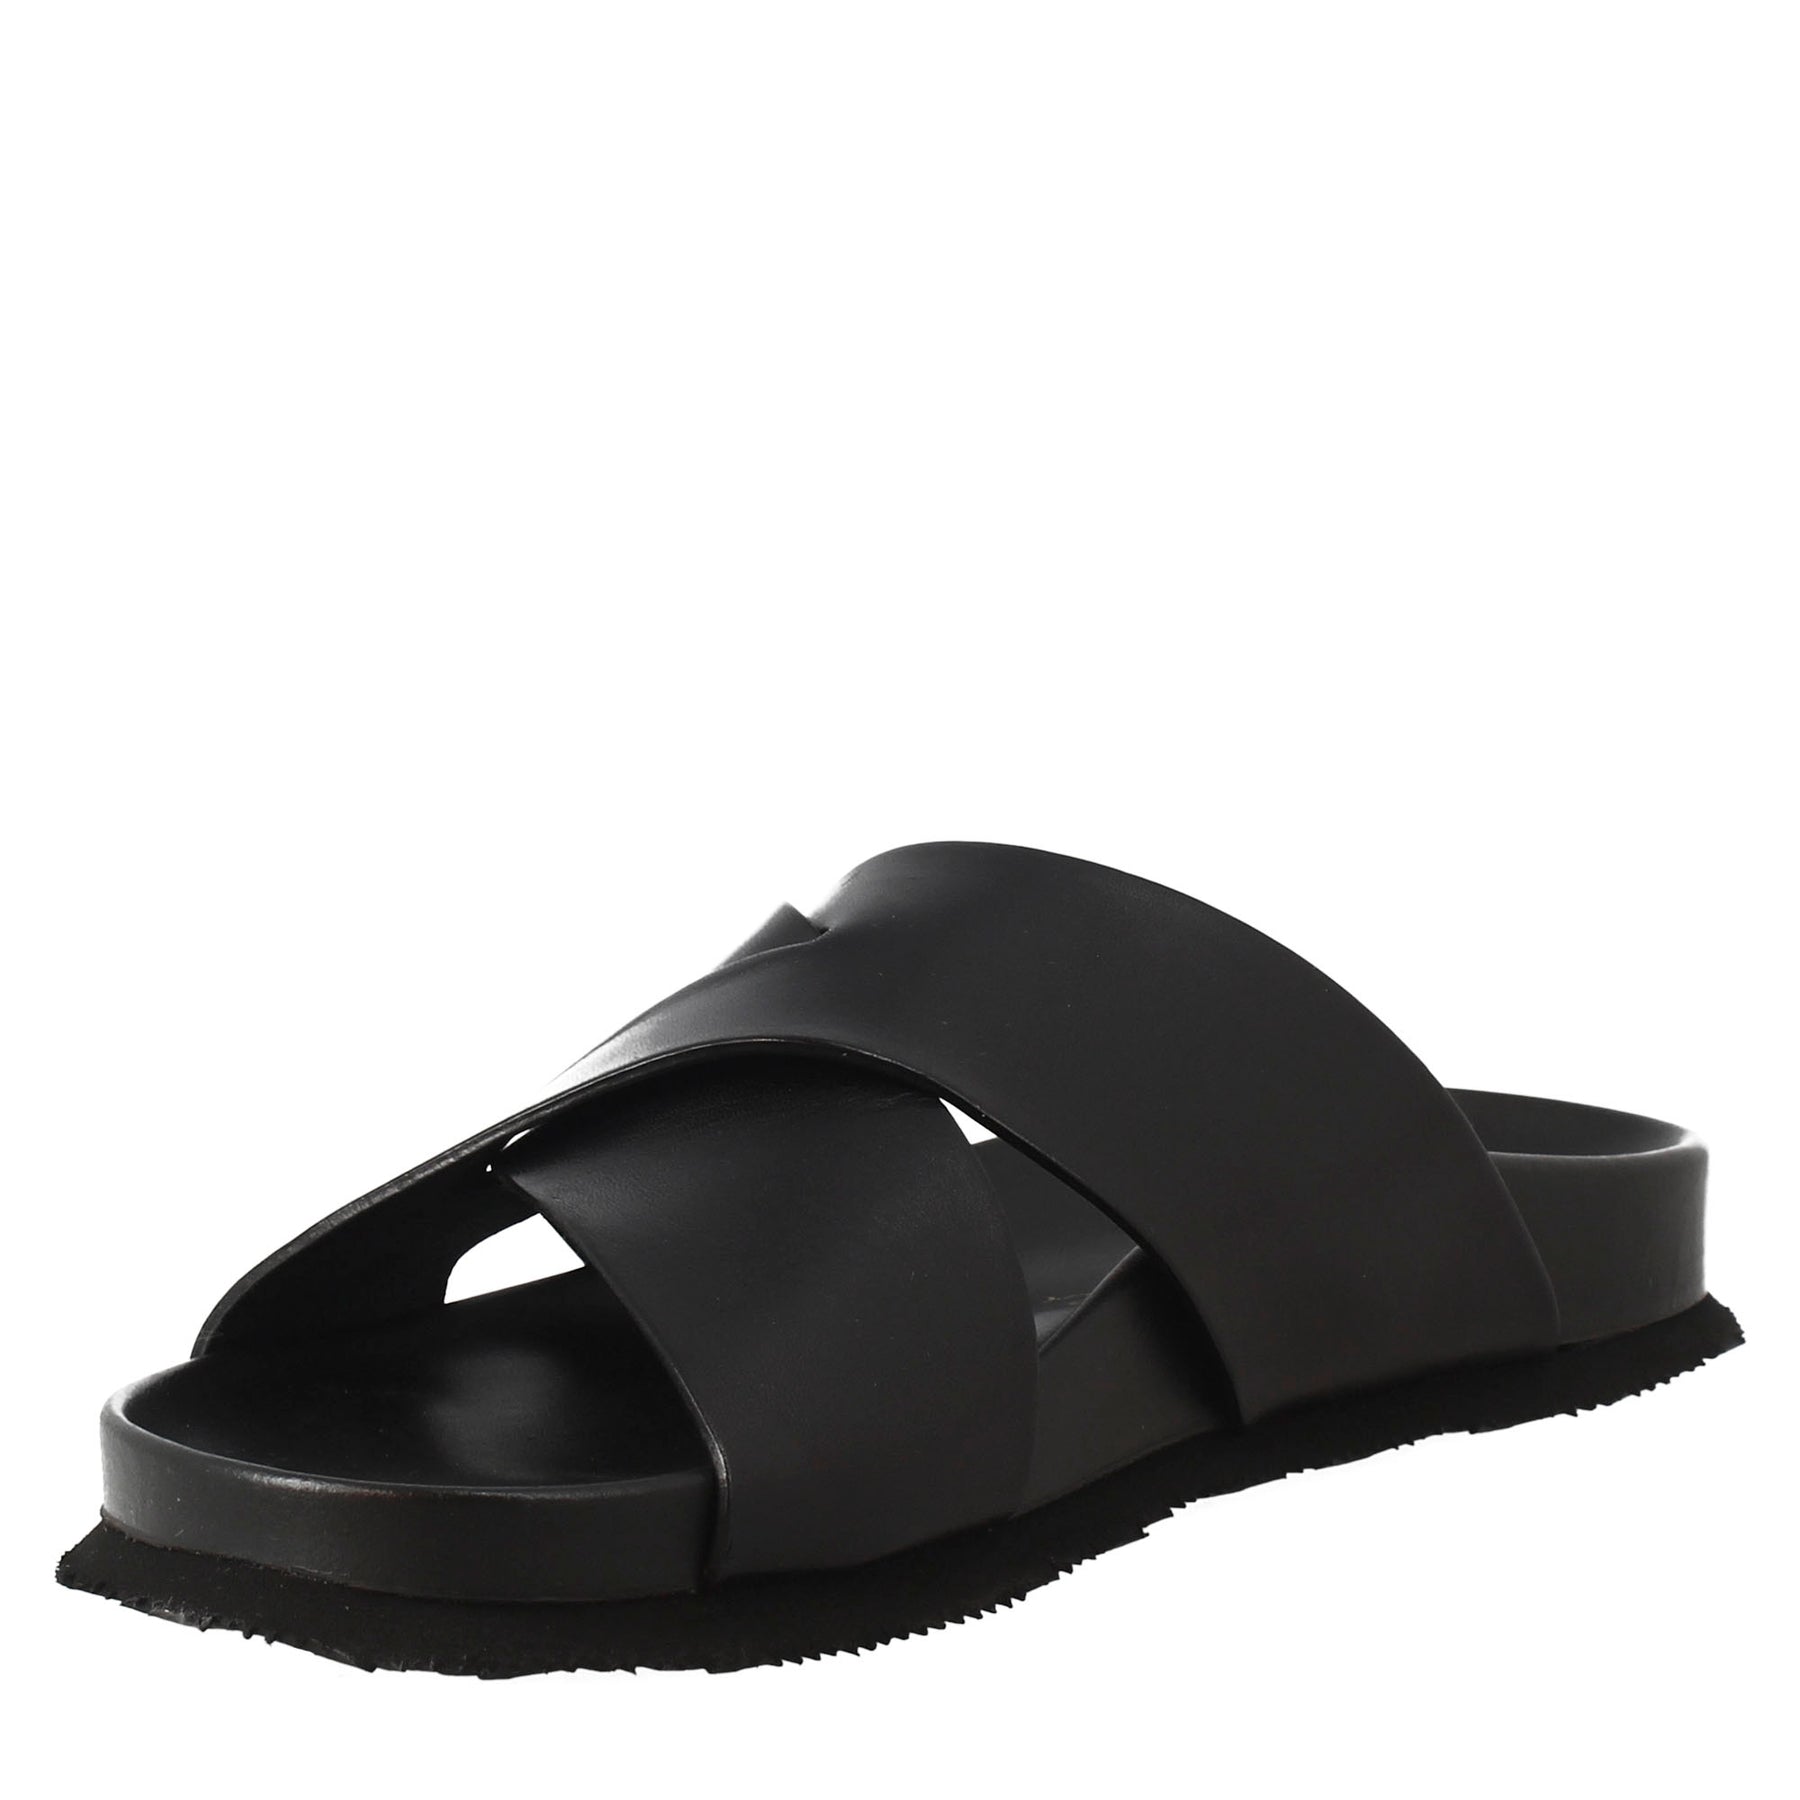 Black open back leather sandals for men